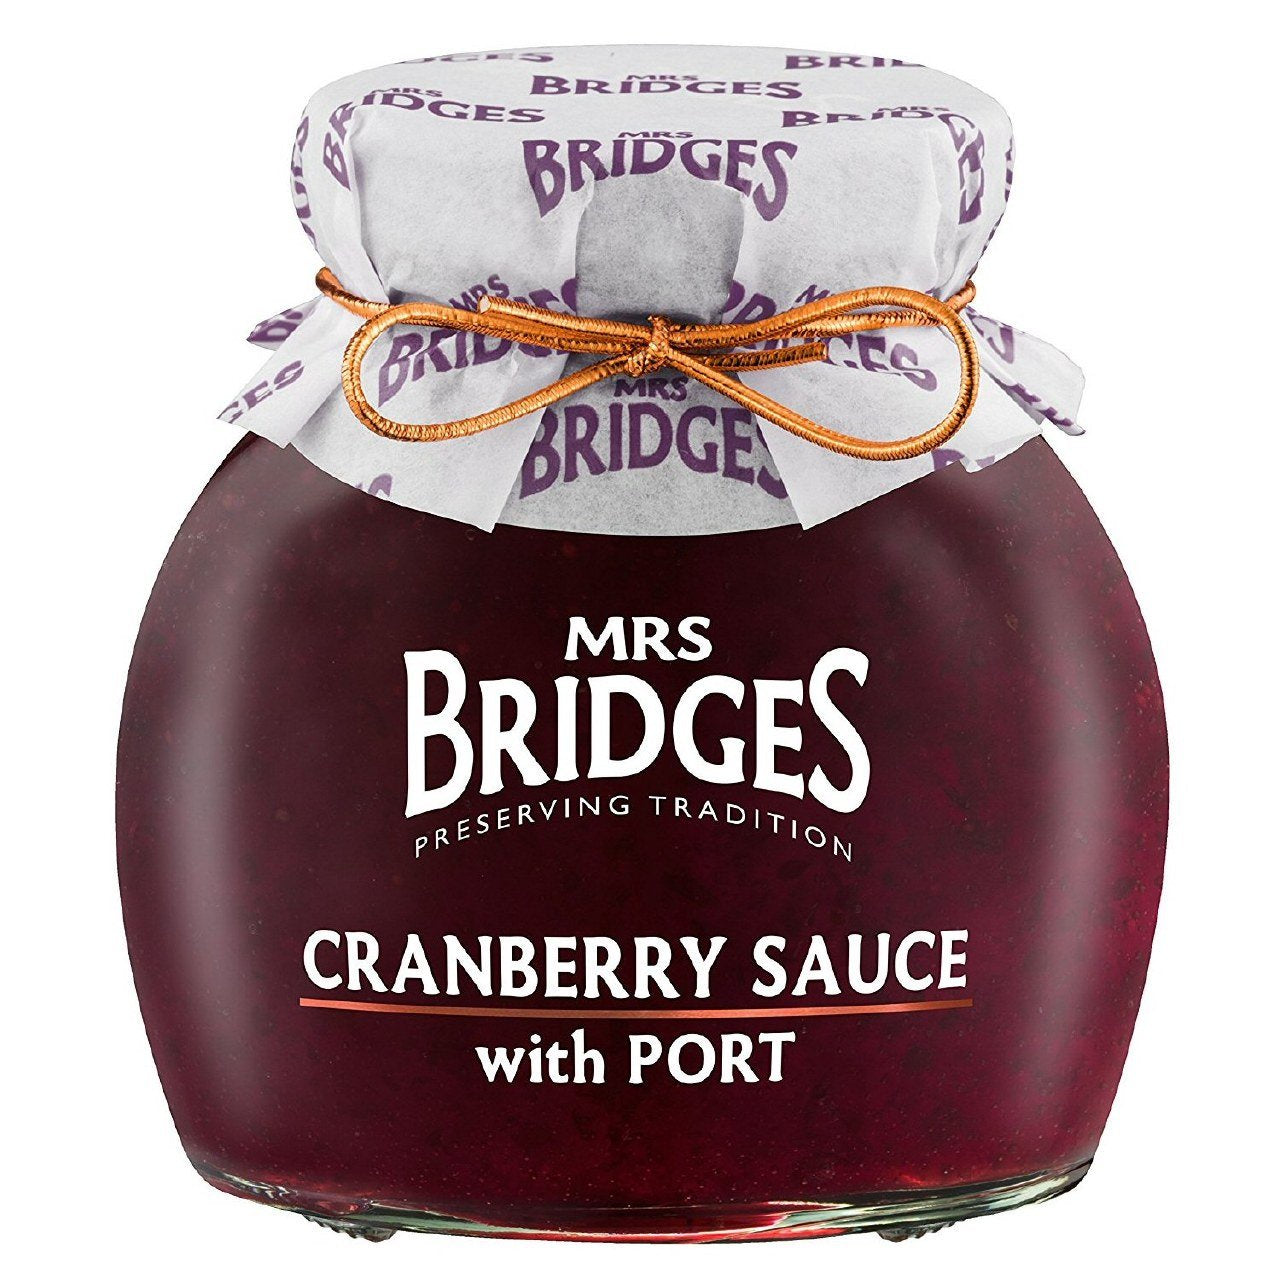 Mrs. Bridges Cranberry Sauce with Port 8.8oz.